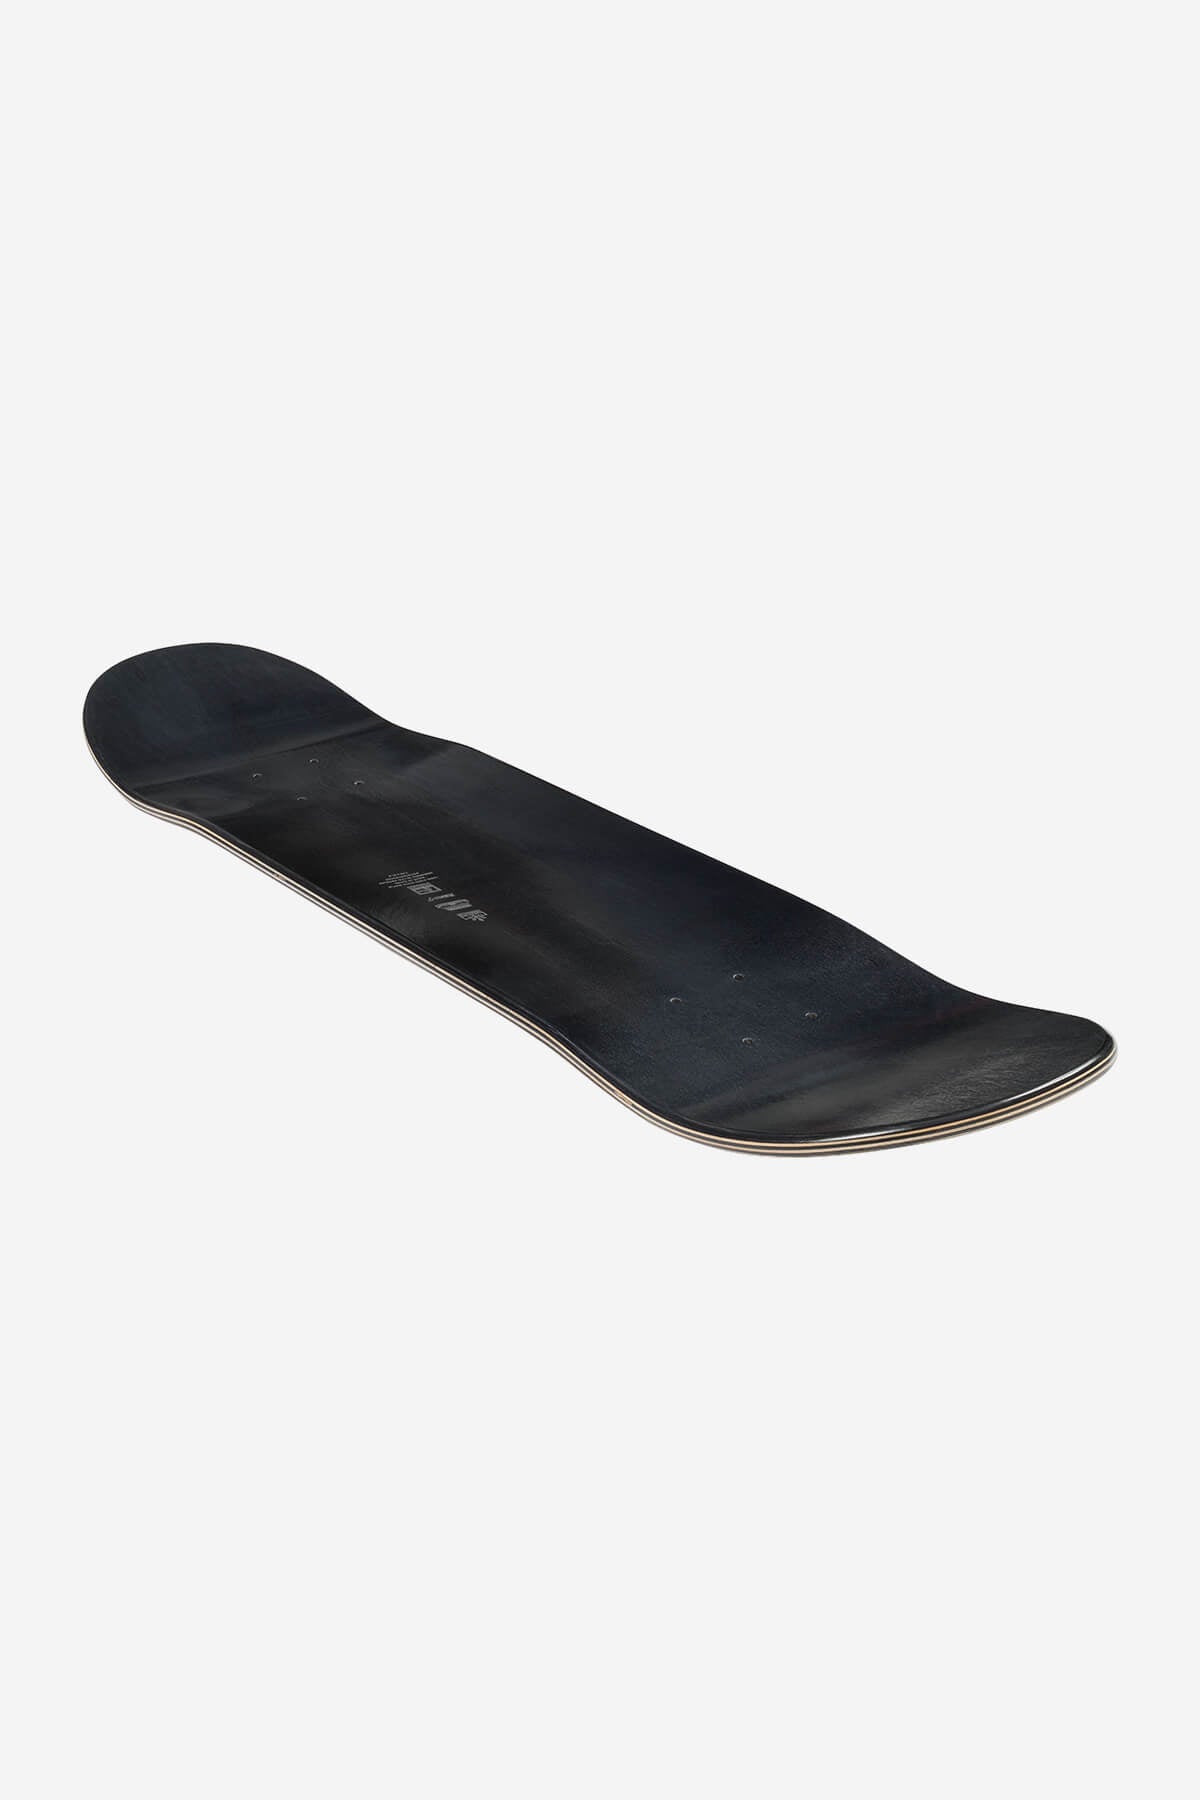 g1 lineform black 7.75" skateboard deck